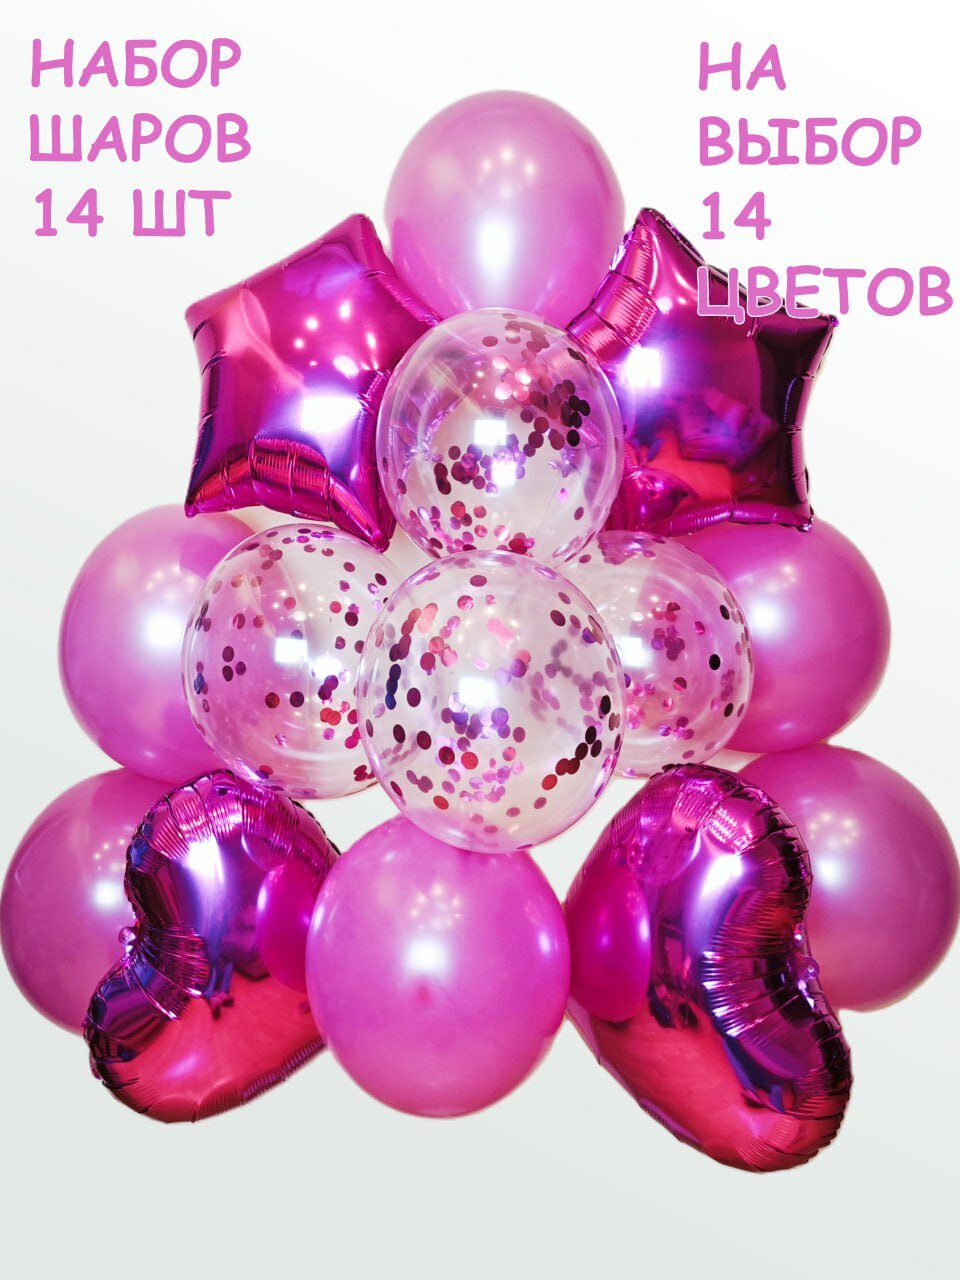 Воздушные шары "Галерея праздника" для фотозоны и мероприятий